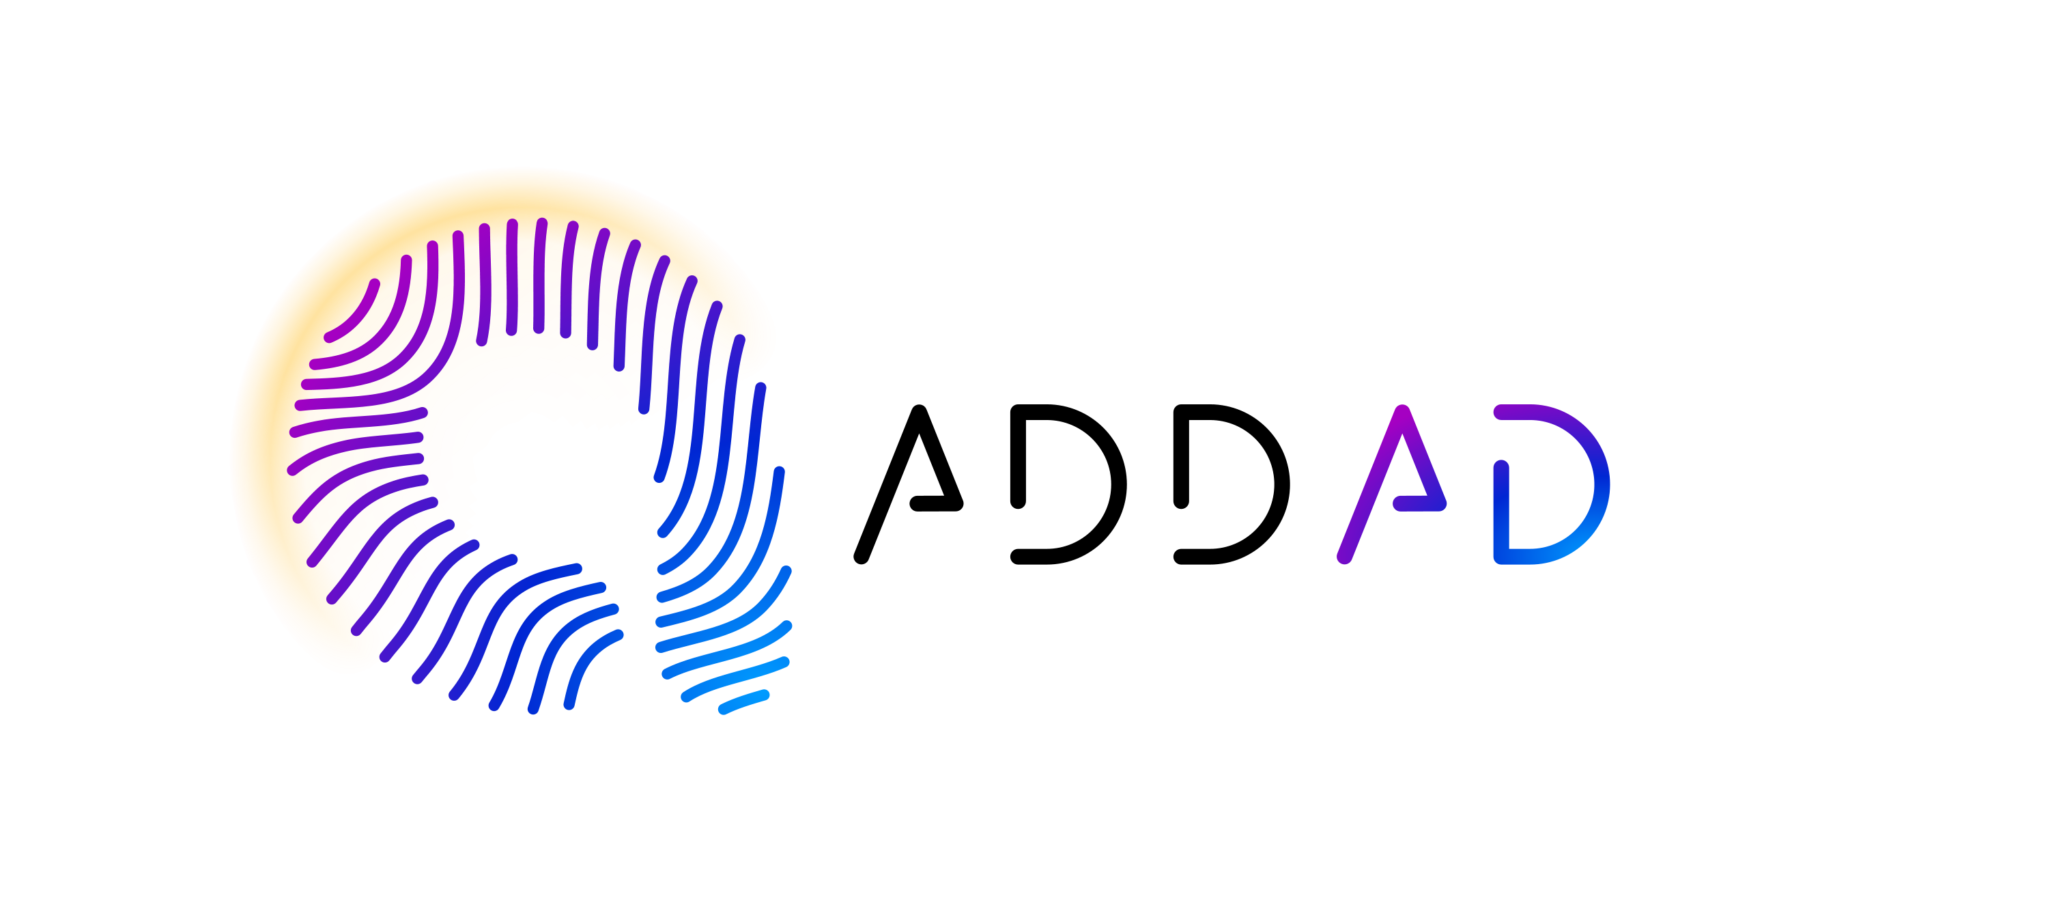 AddAd Logo v2 Light Background - Kerlando Morette